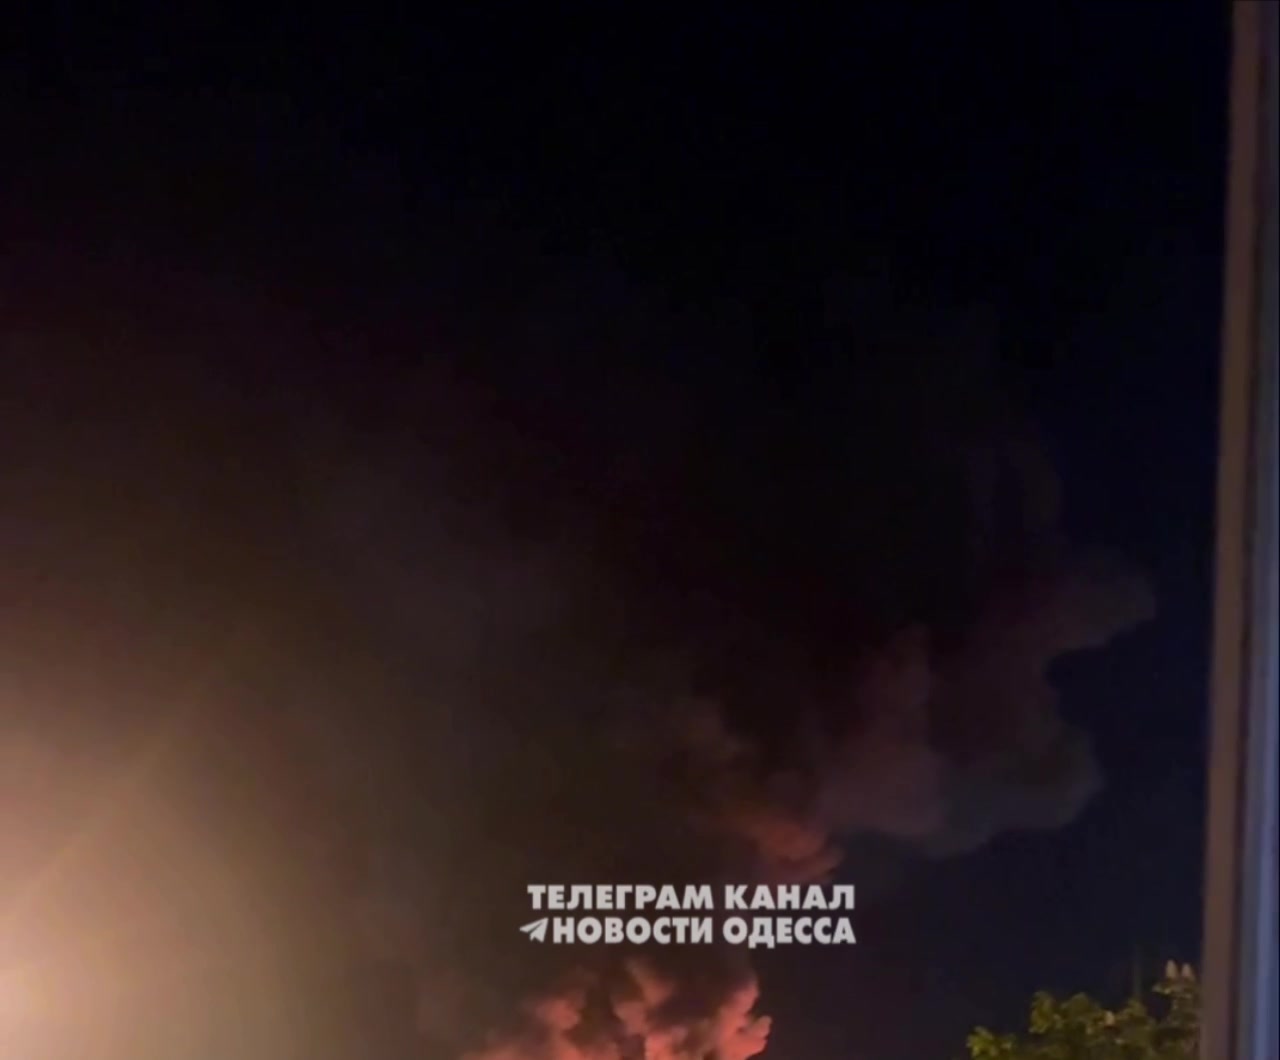 Liels ugunsgrēks pēc ziņotā raķetes trieciena Odesā